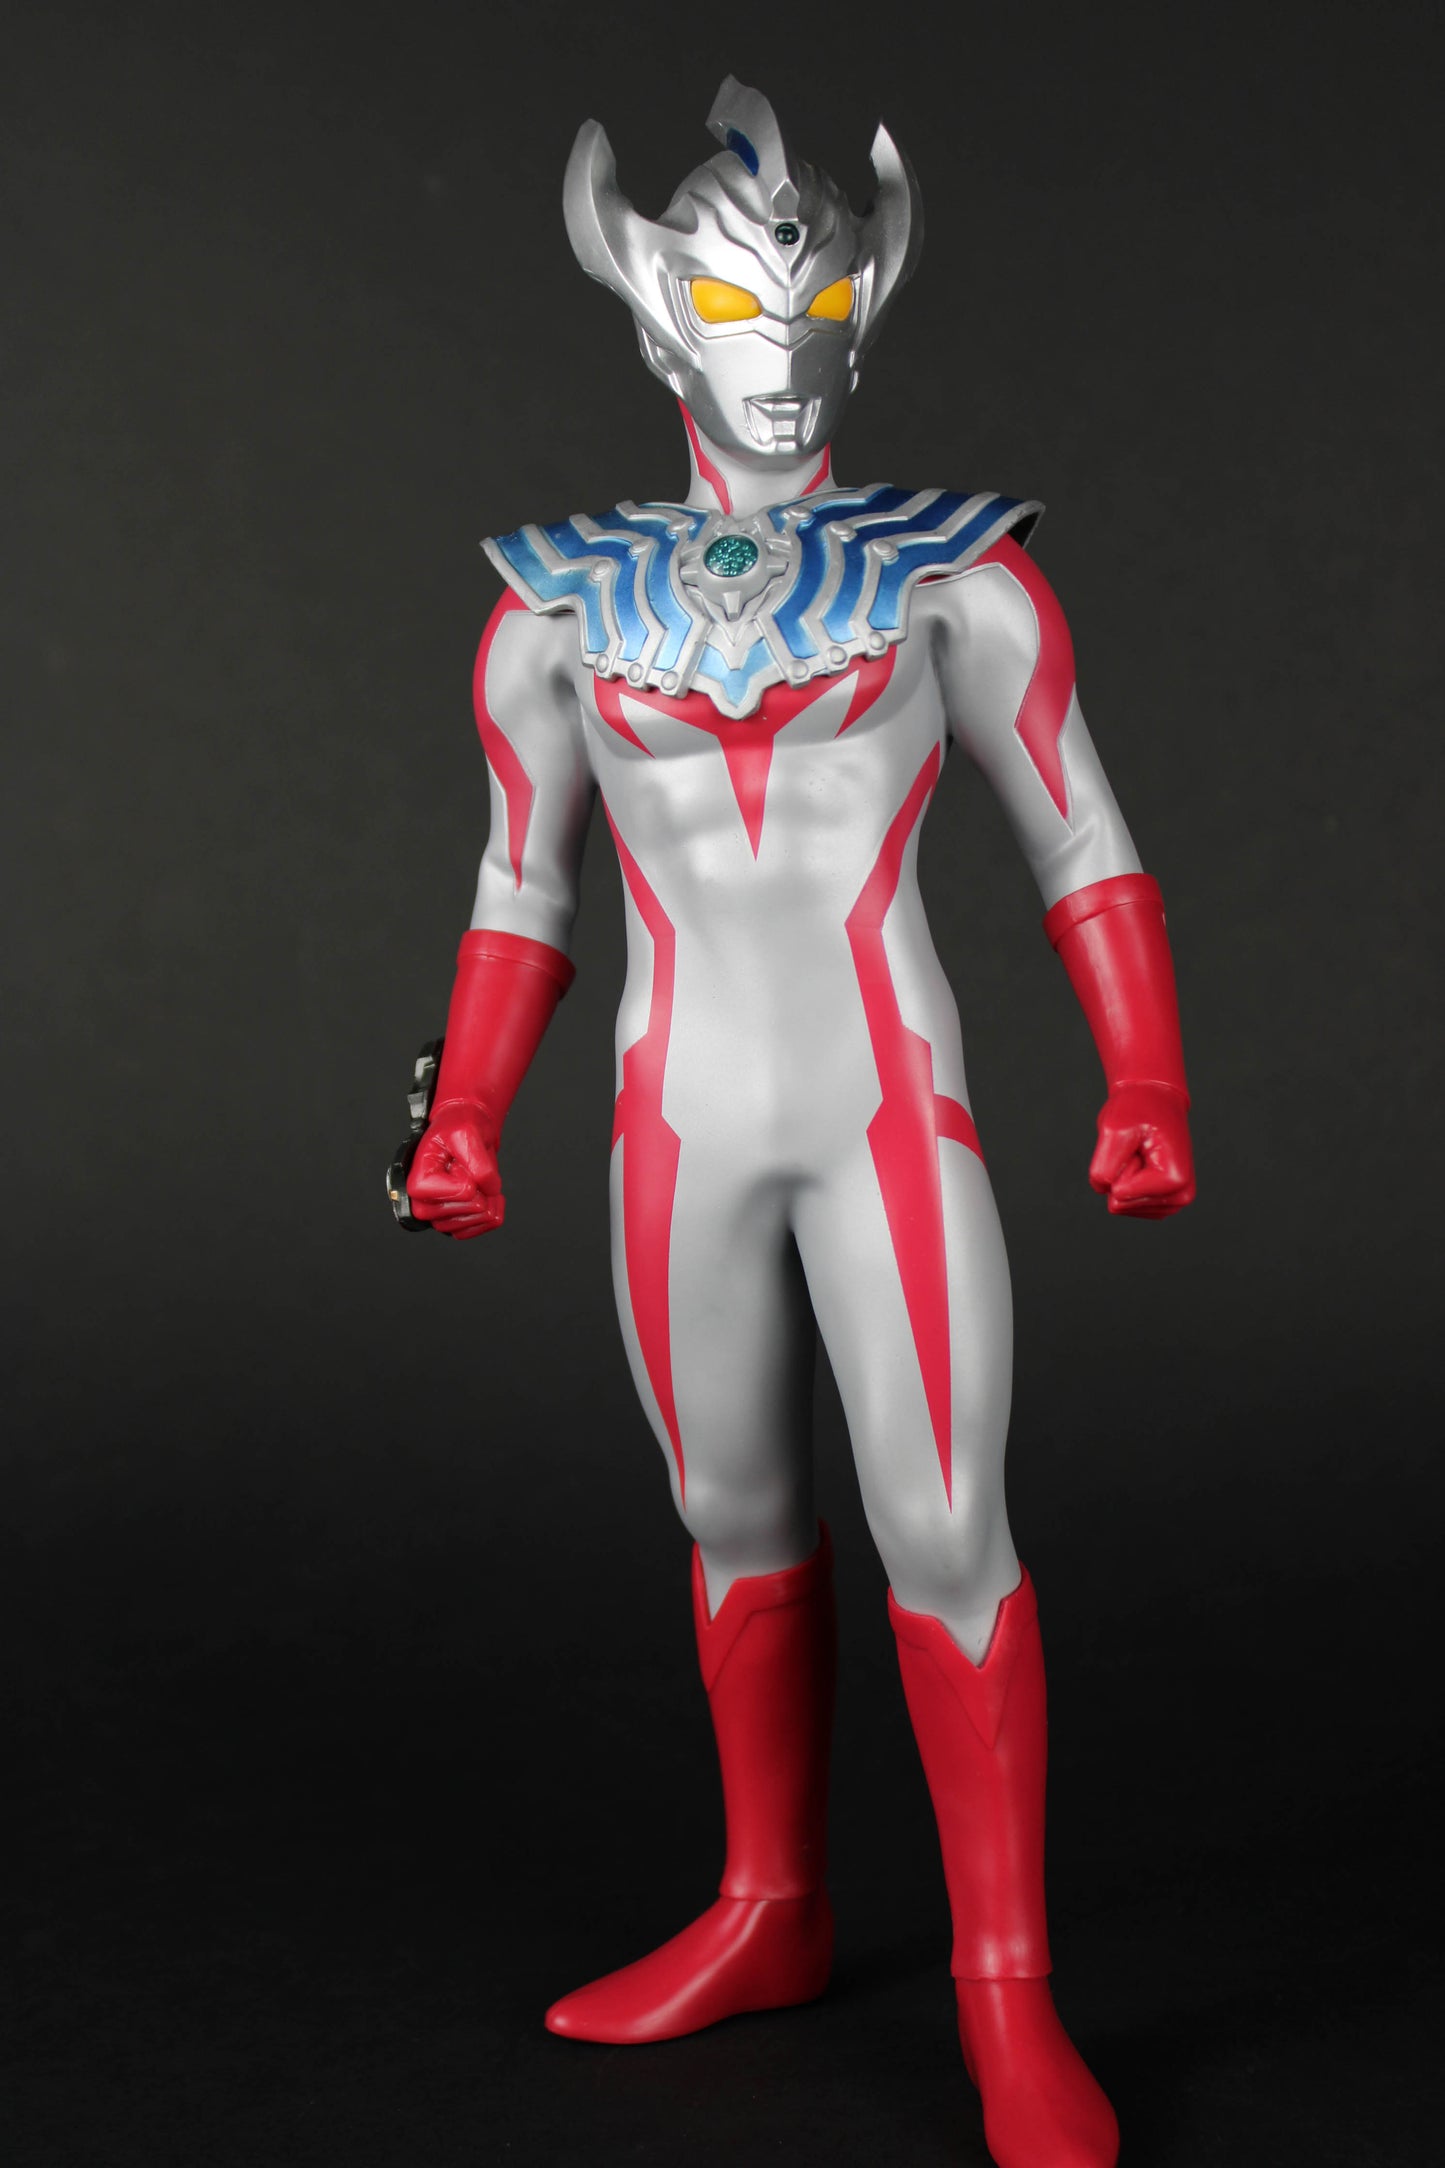 Ultraman Taiga Ichiban Statue